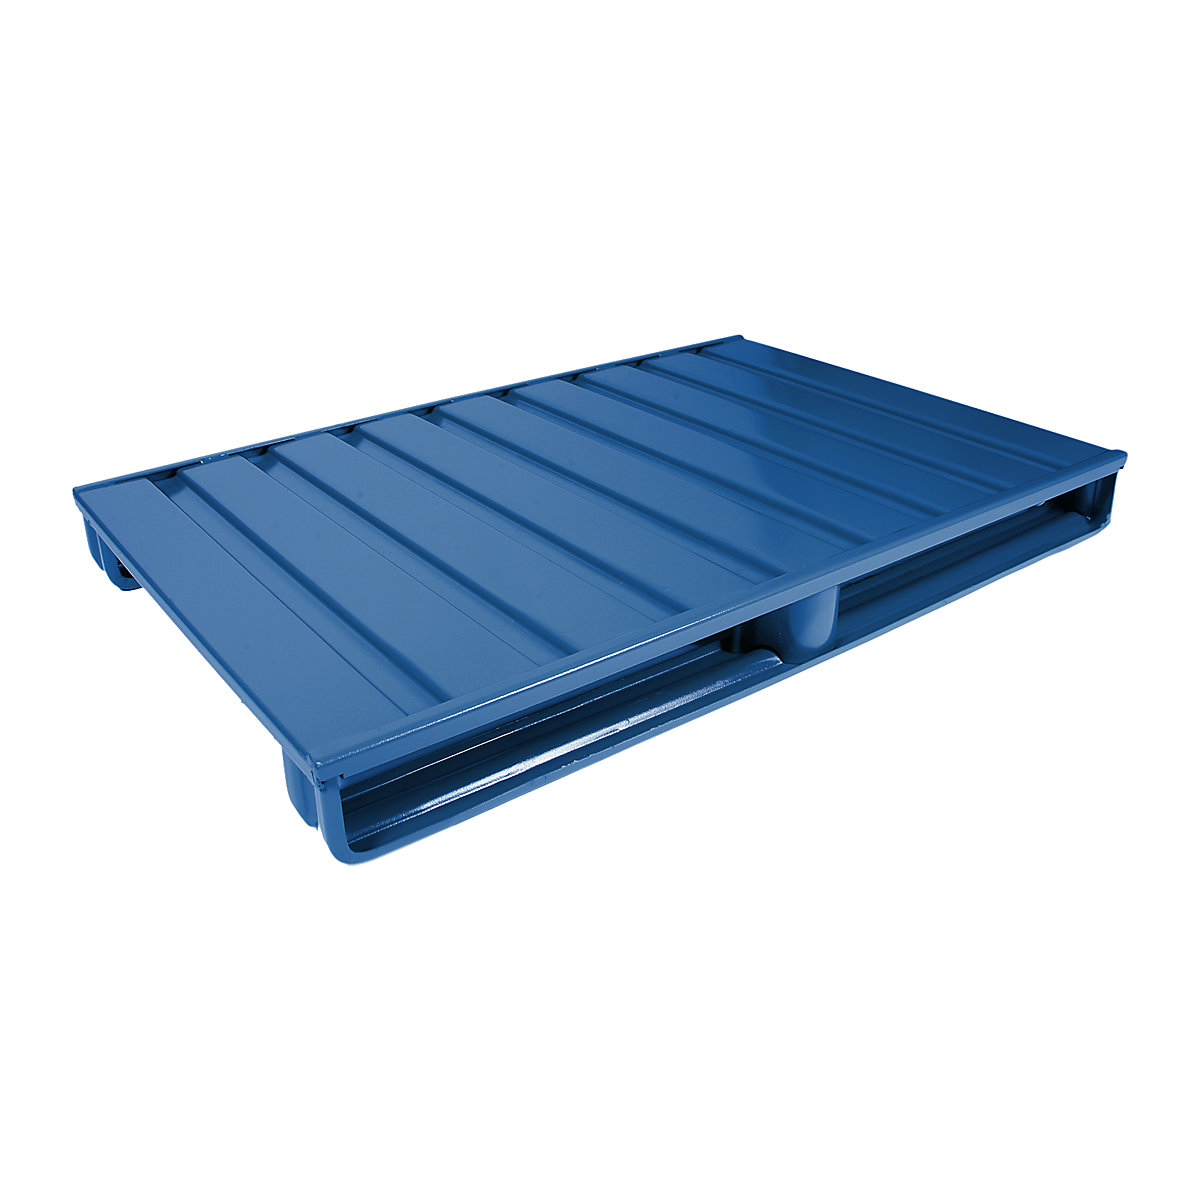 Ploska jeklena paleta – Heson, DxŠ 1200 x 1000 mm, nosilnost 2000 kg, encijan modre barve, od 10 kosov-3